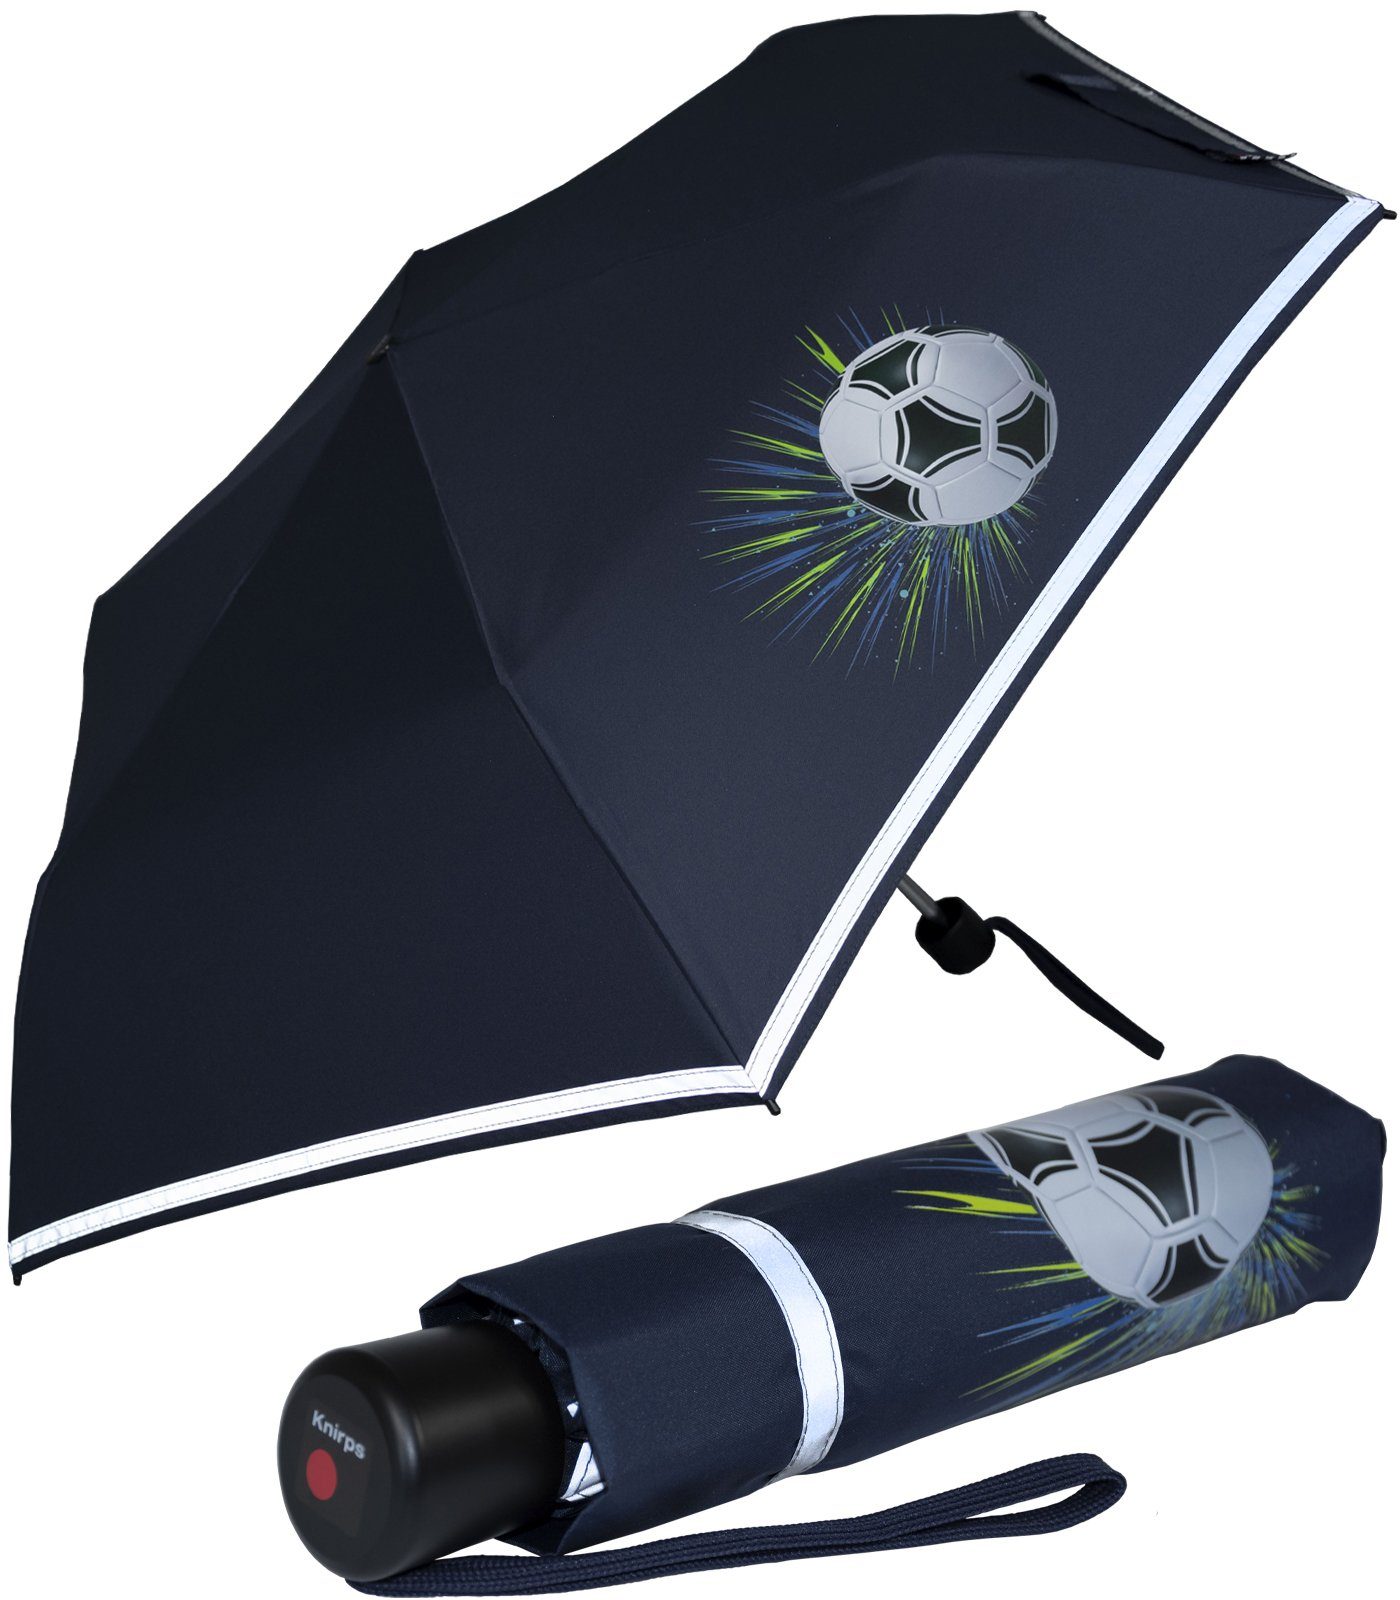 Knirps® Taschenregenschirm Kinderschirm 4Kids reflective mit Reflexborte, Sicherheit auf dem Schulweg, Fussball, Goal white